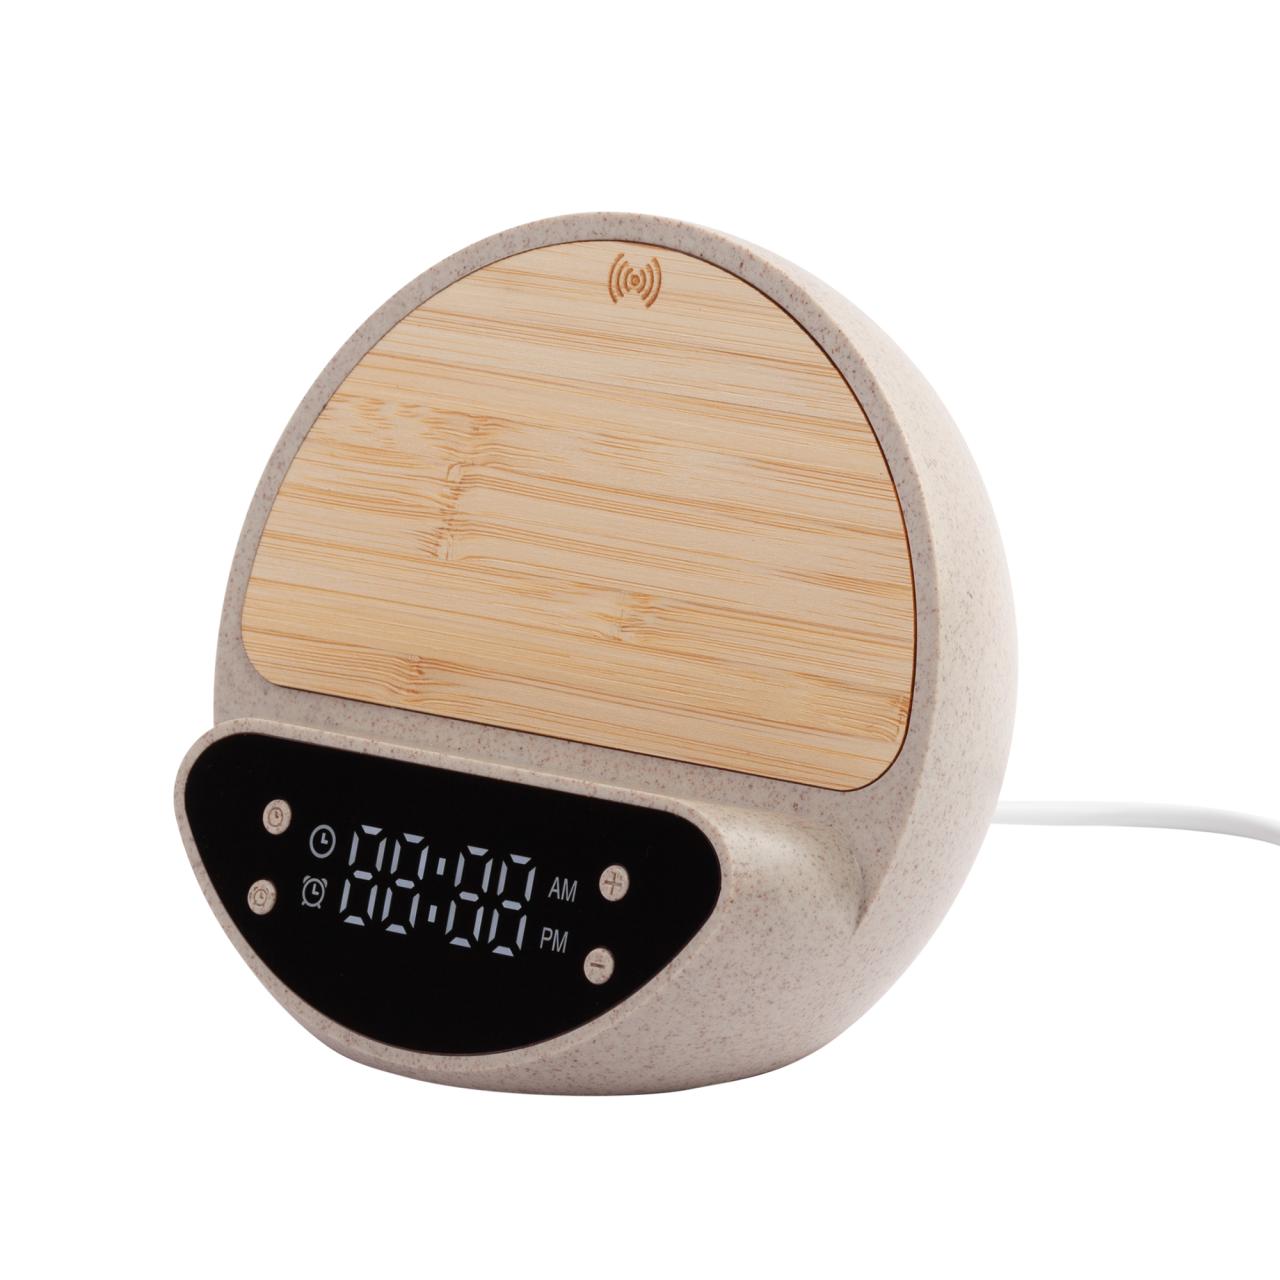 Настольные часы Smiley с беспроводным (10W) зарядным устройством и будильником, пшеница/бамбук/пластик